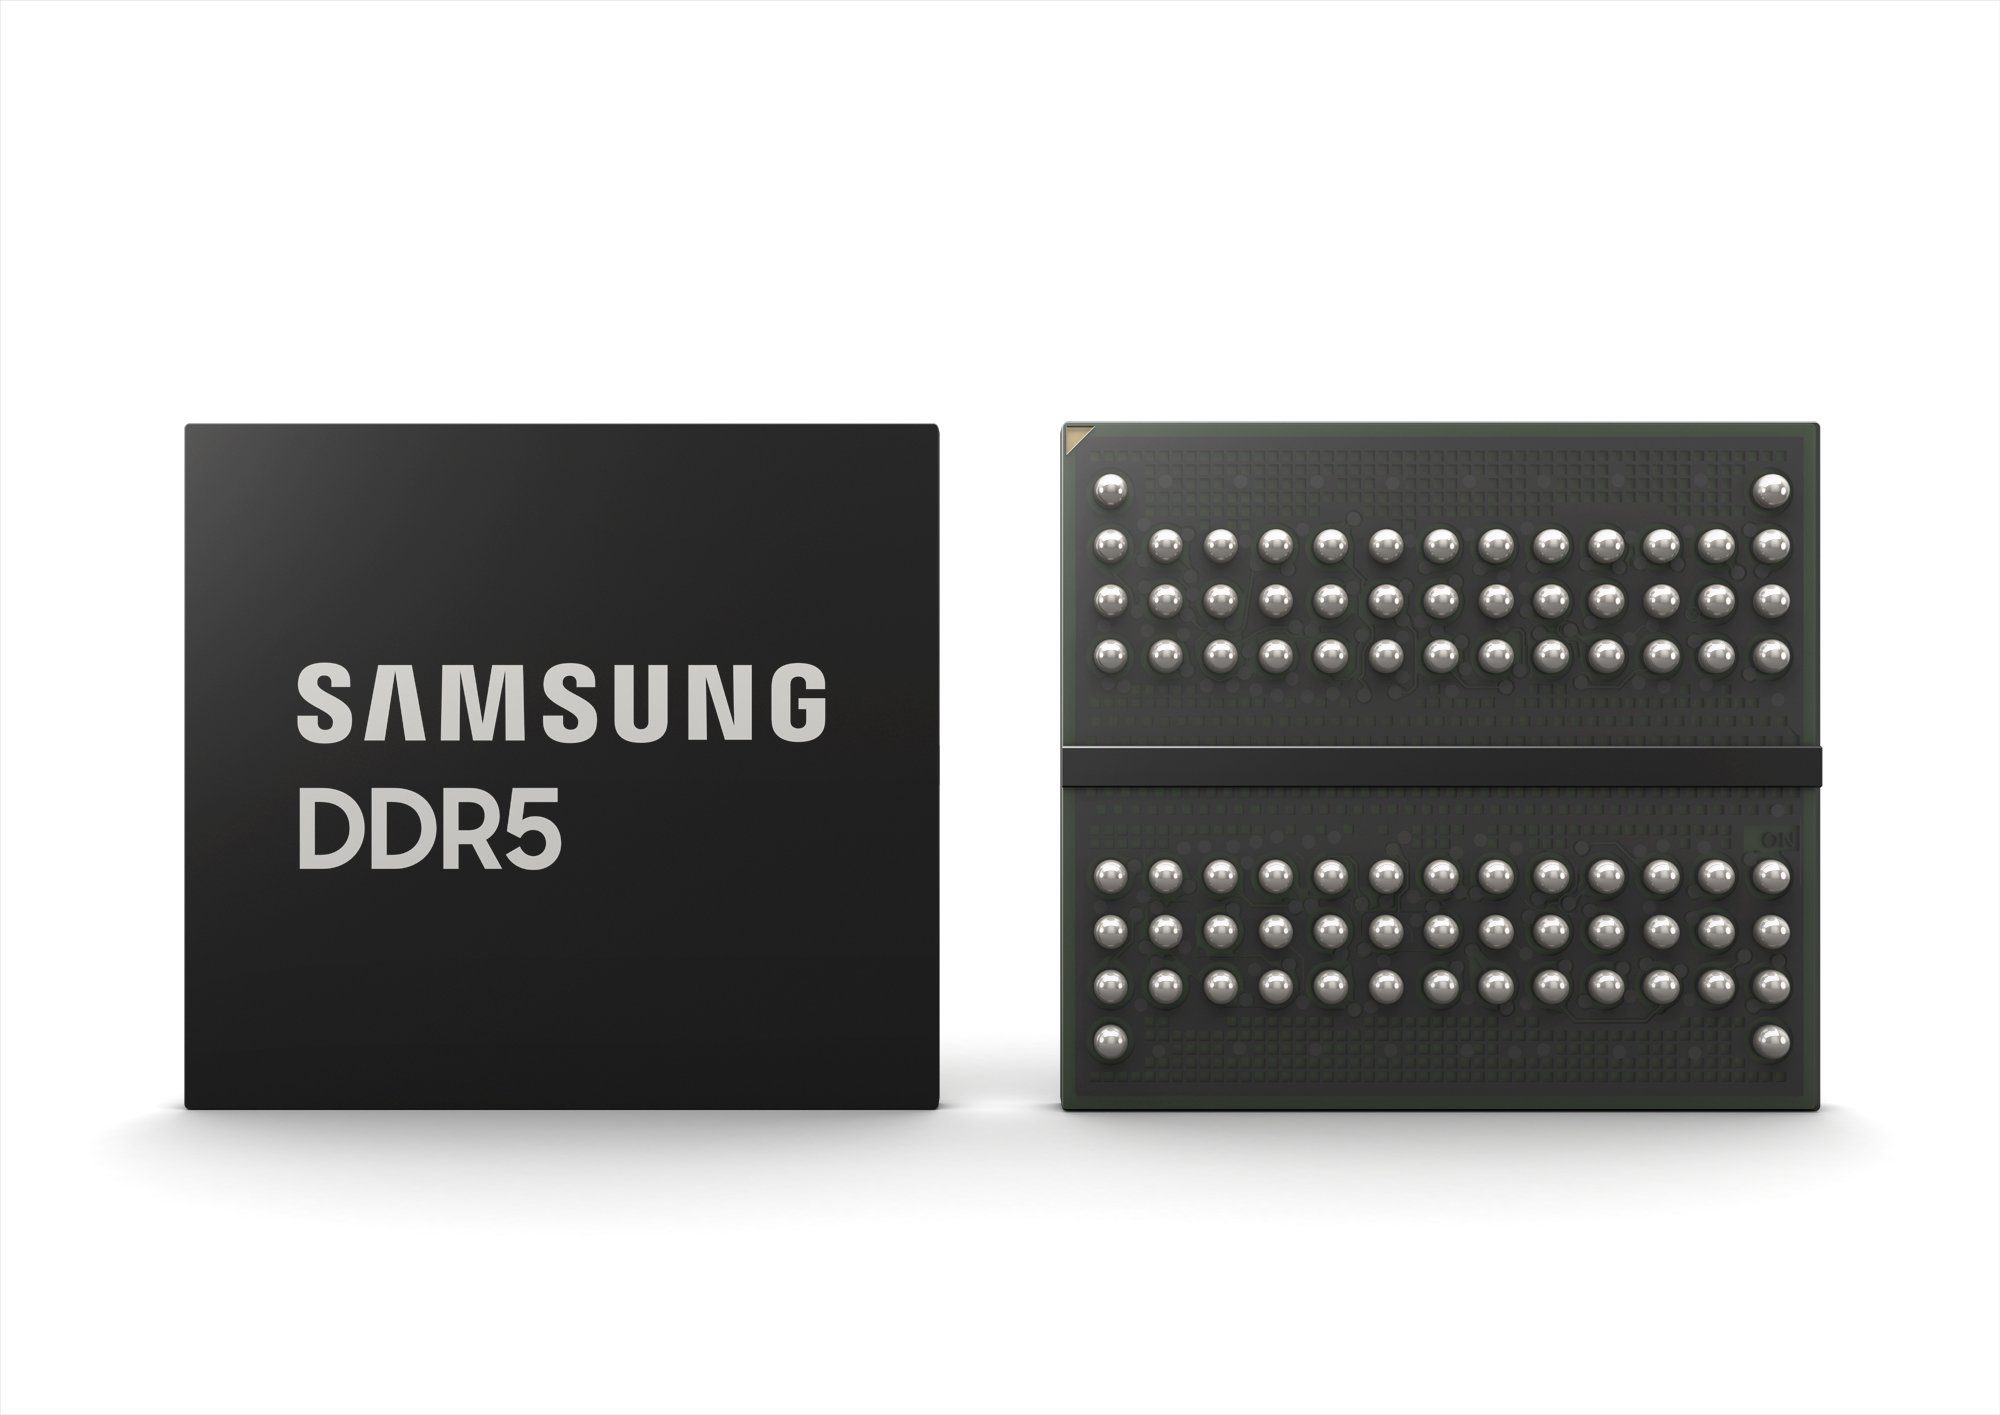 Samsung produziert DRAM DDR5-Speicher in einer neuen Technologie, die ihre Geschwindigkeit deutlich erhöht 163